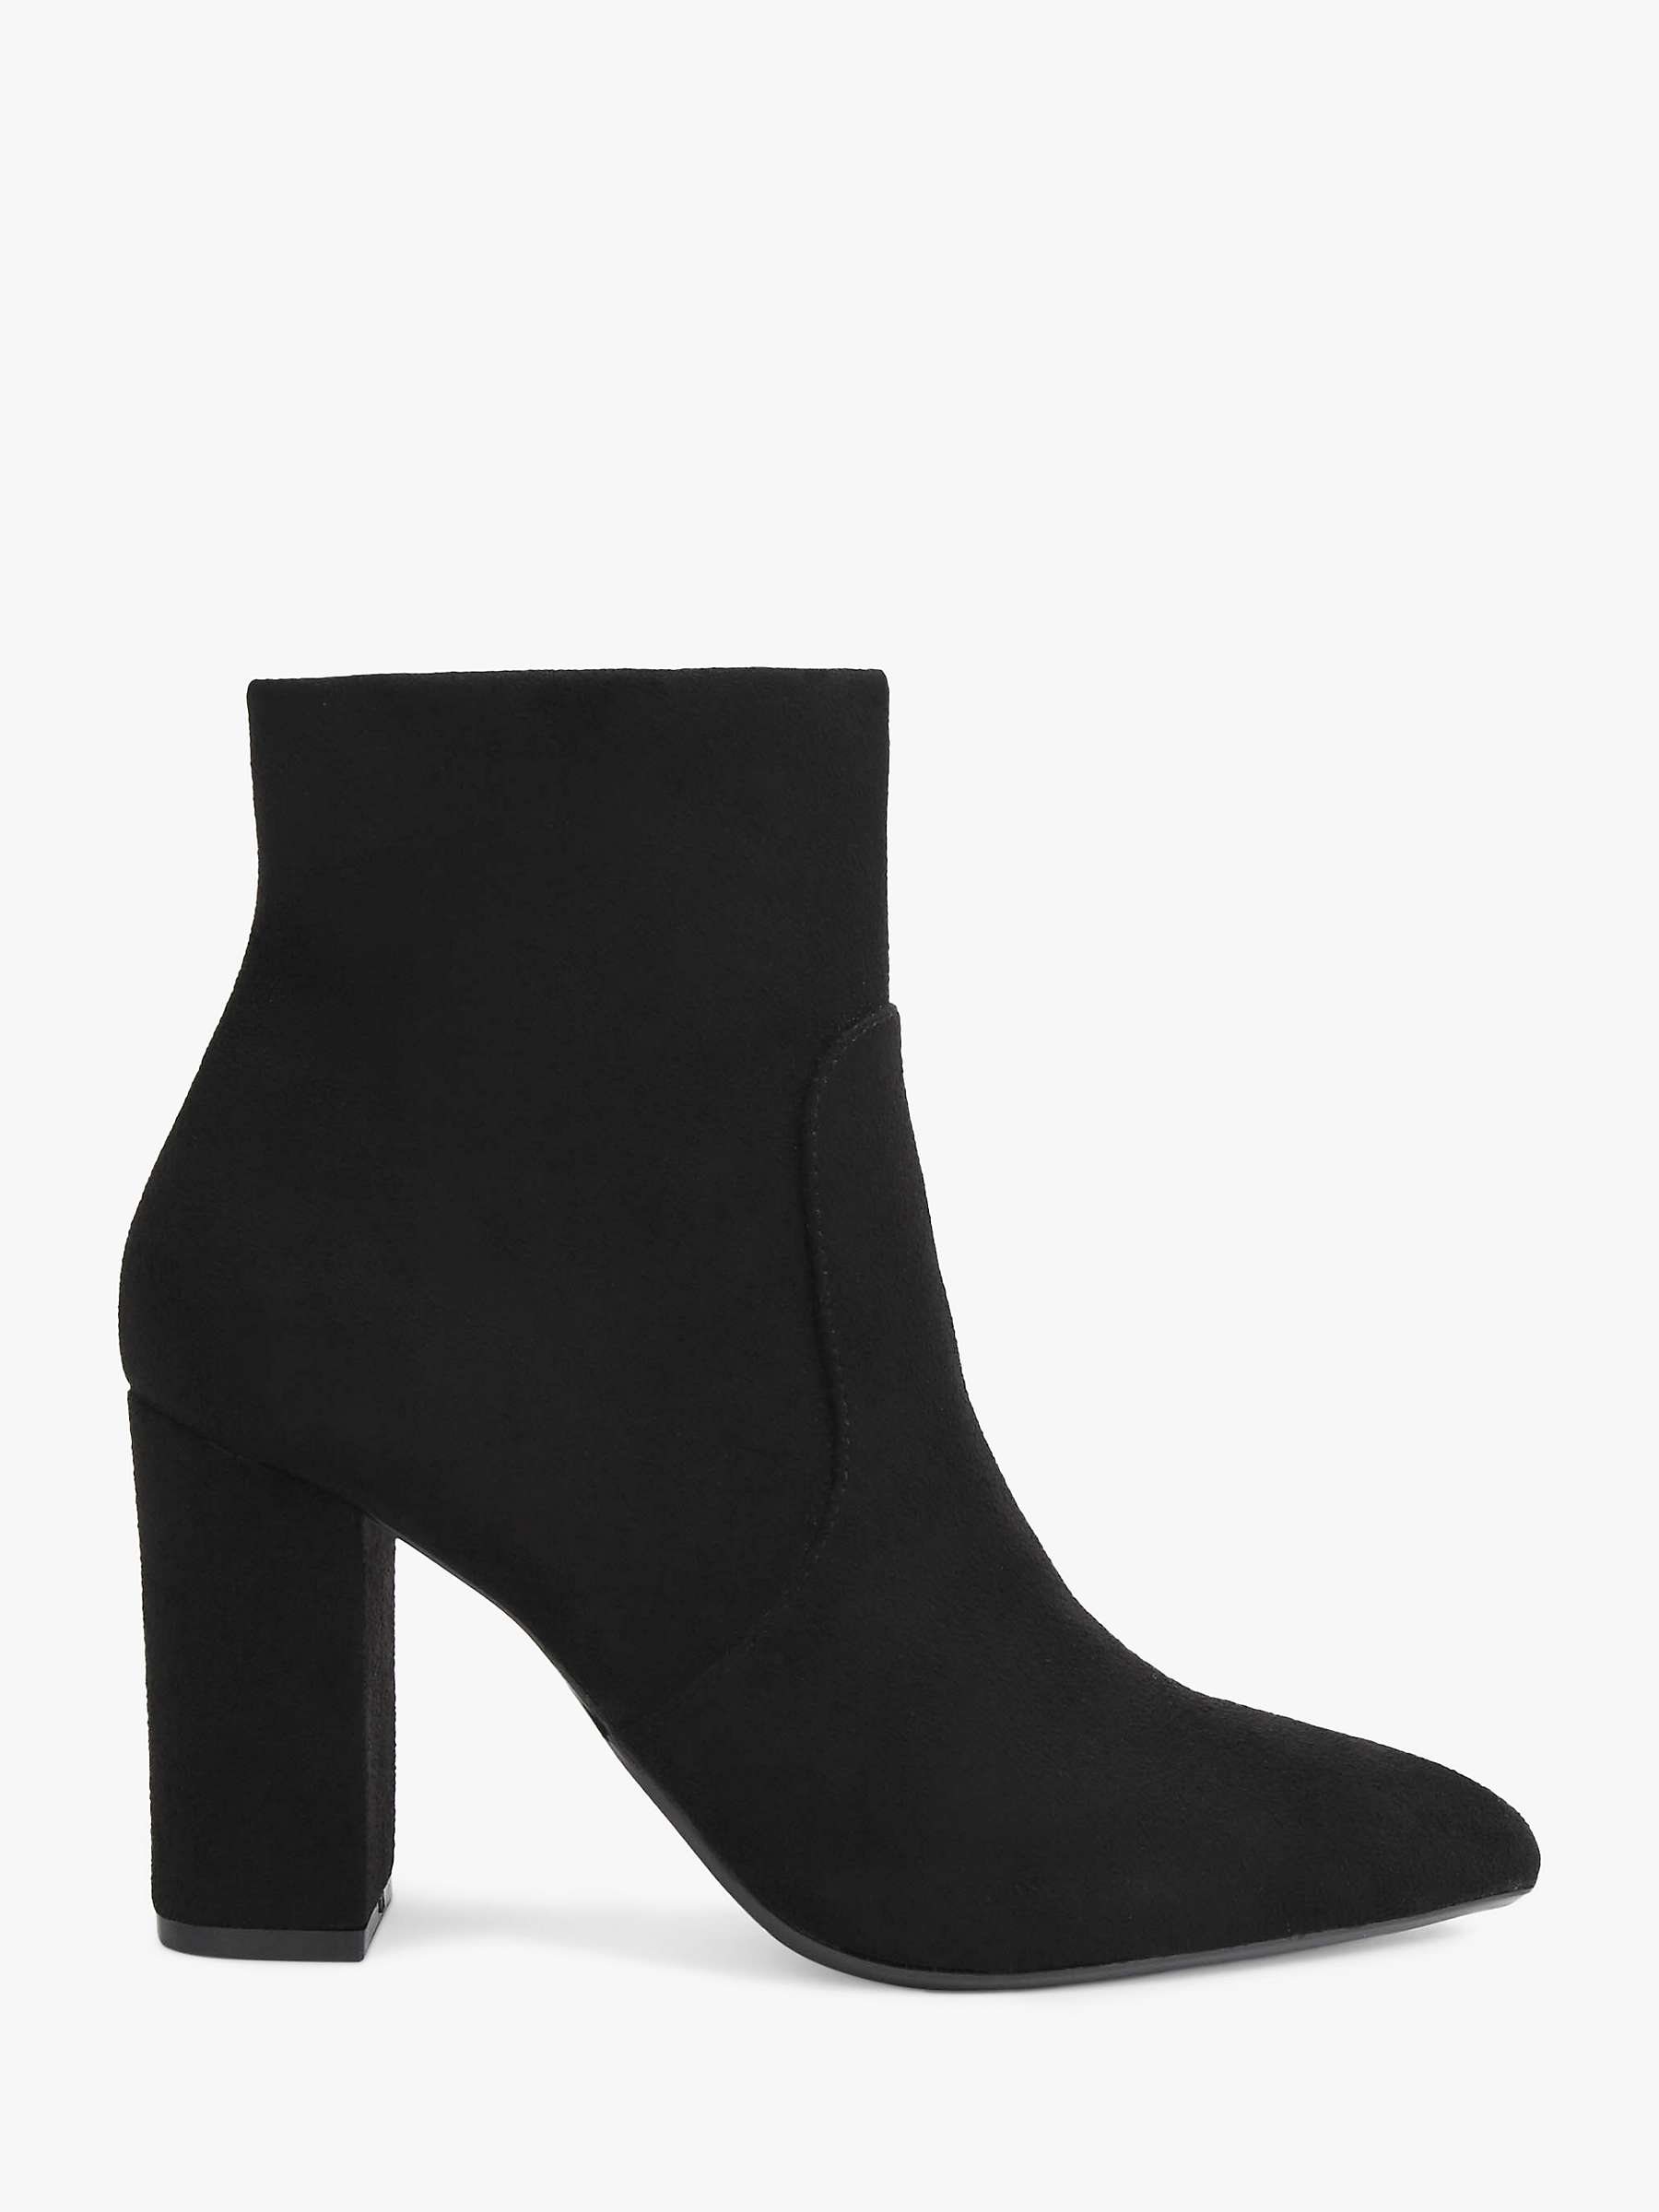 Buy Carvela Shone High Block Heel Ankle Boots, Black Online at johnlewis.com